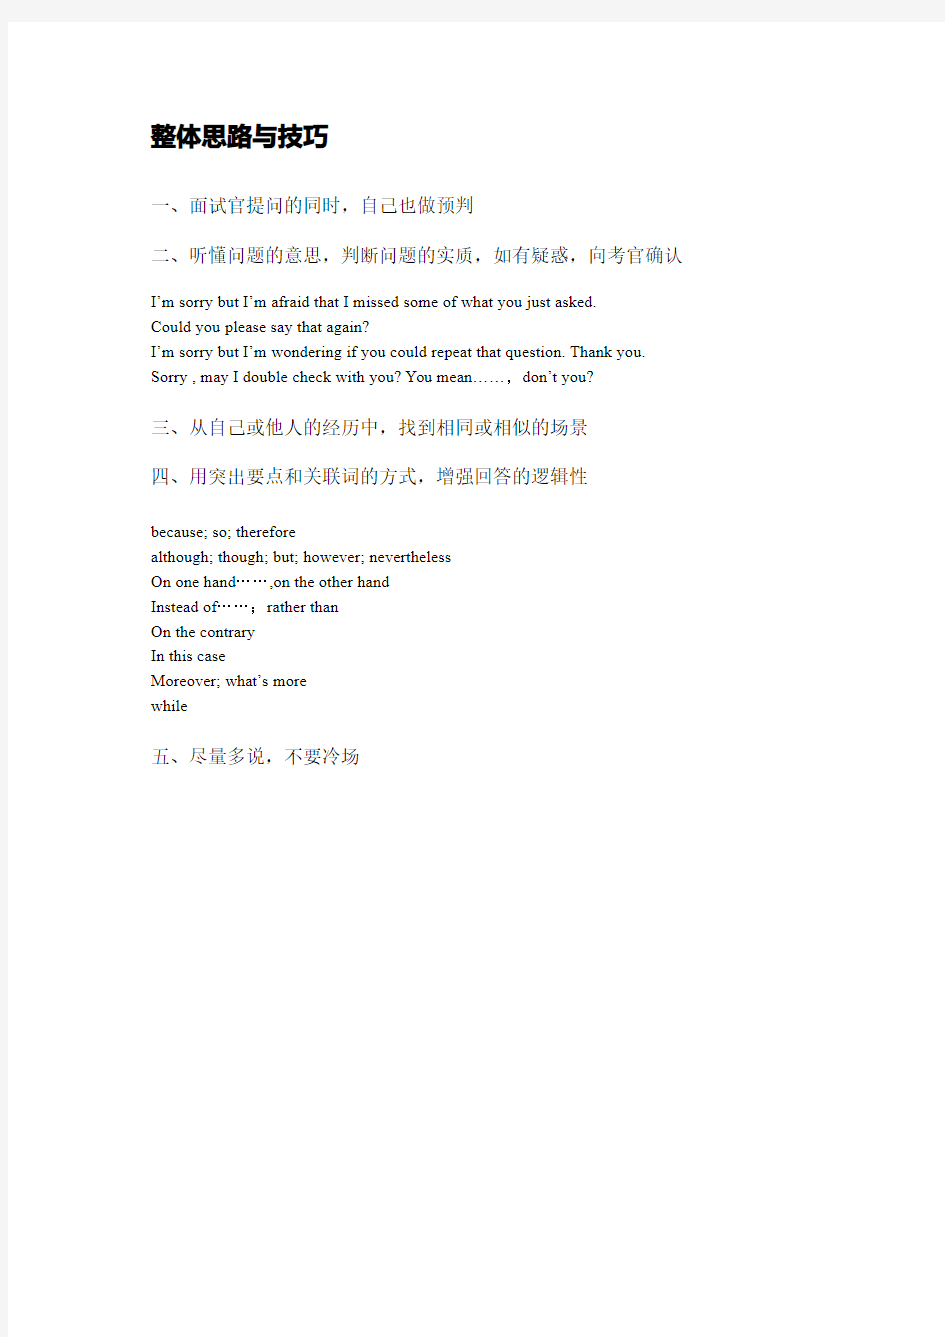 国际汉语教师证书问答题类型详解